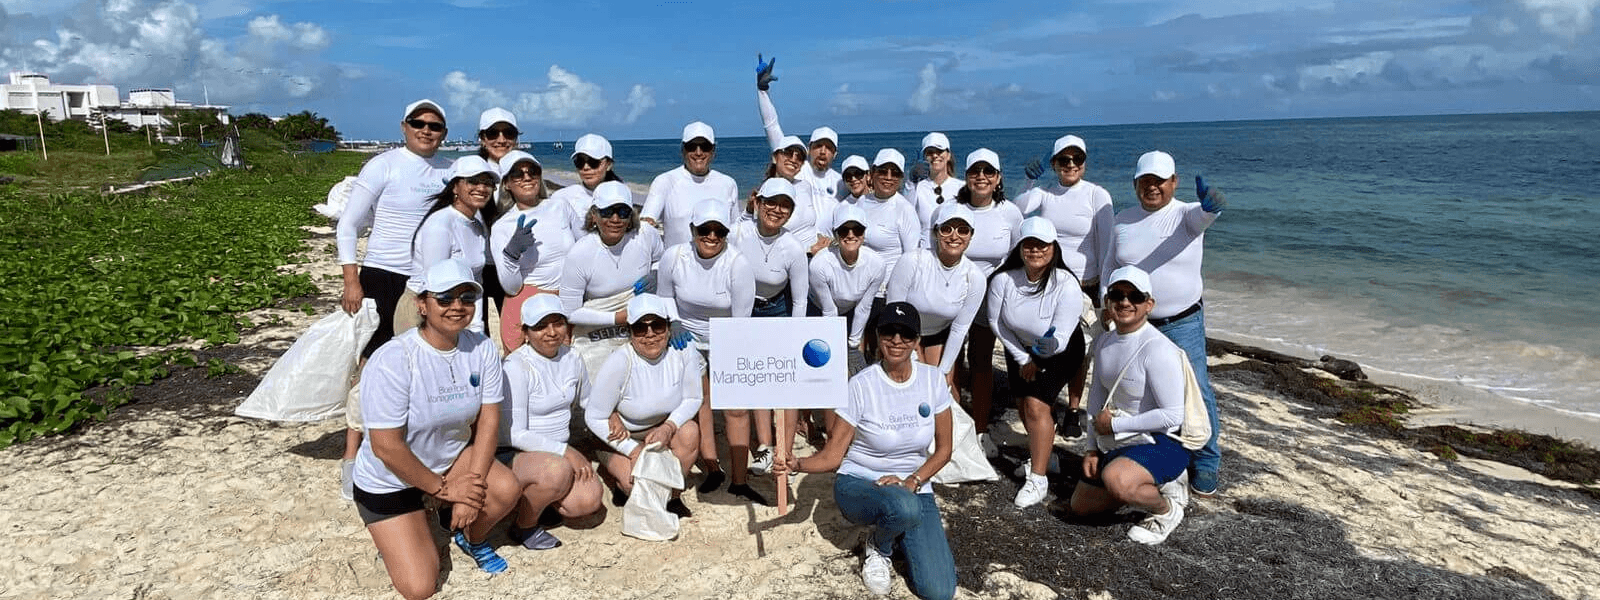 Limpieza de playa en Puerto Morelos con Blue Point Management